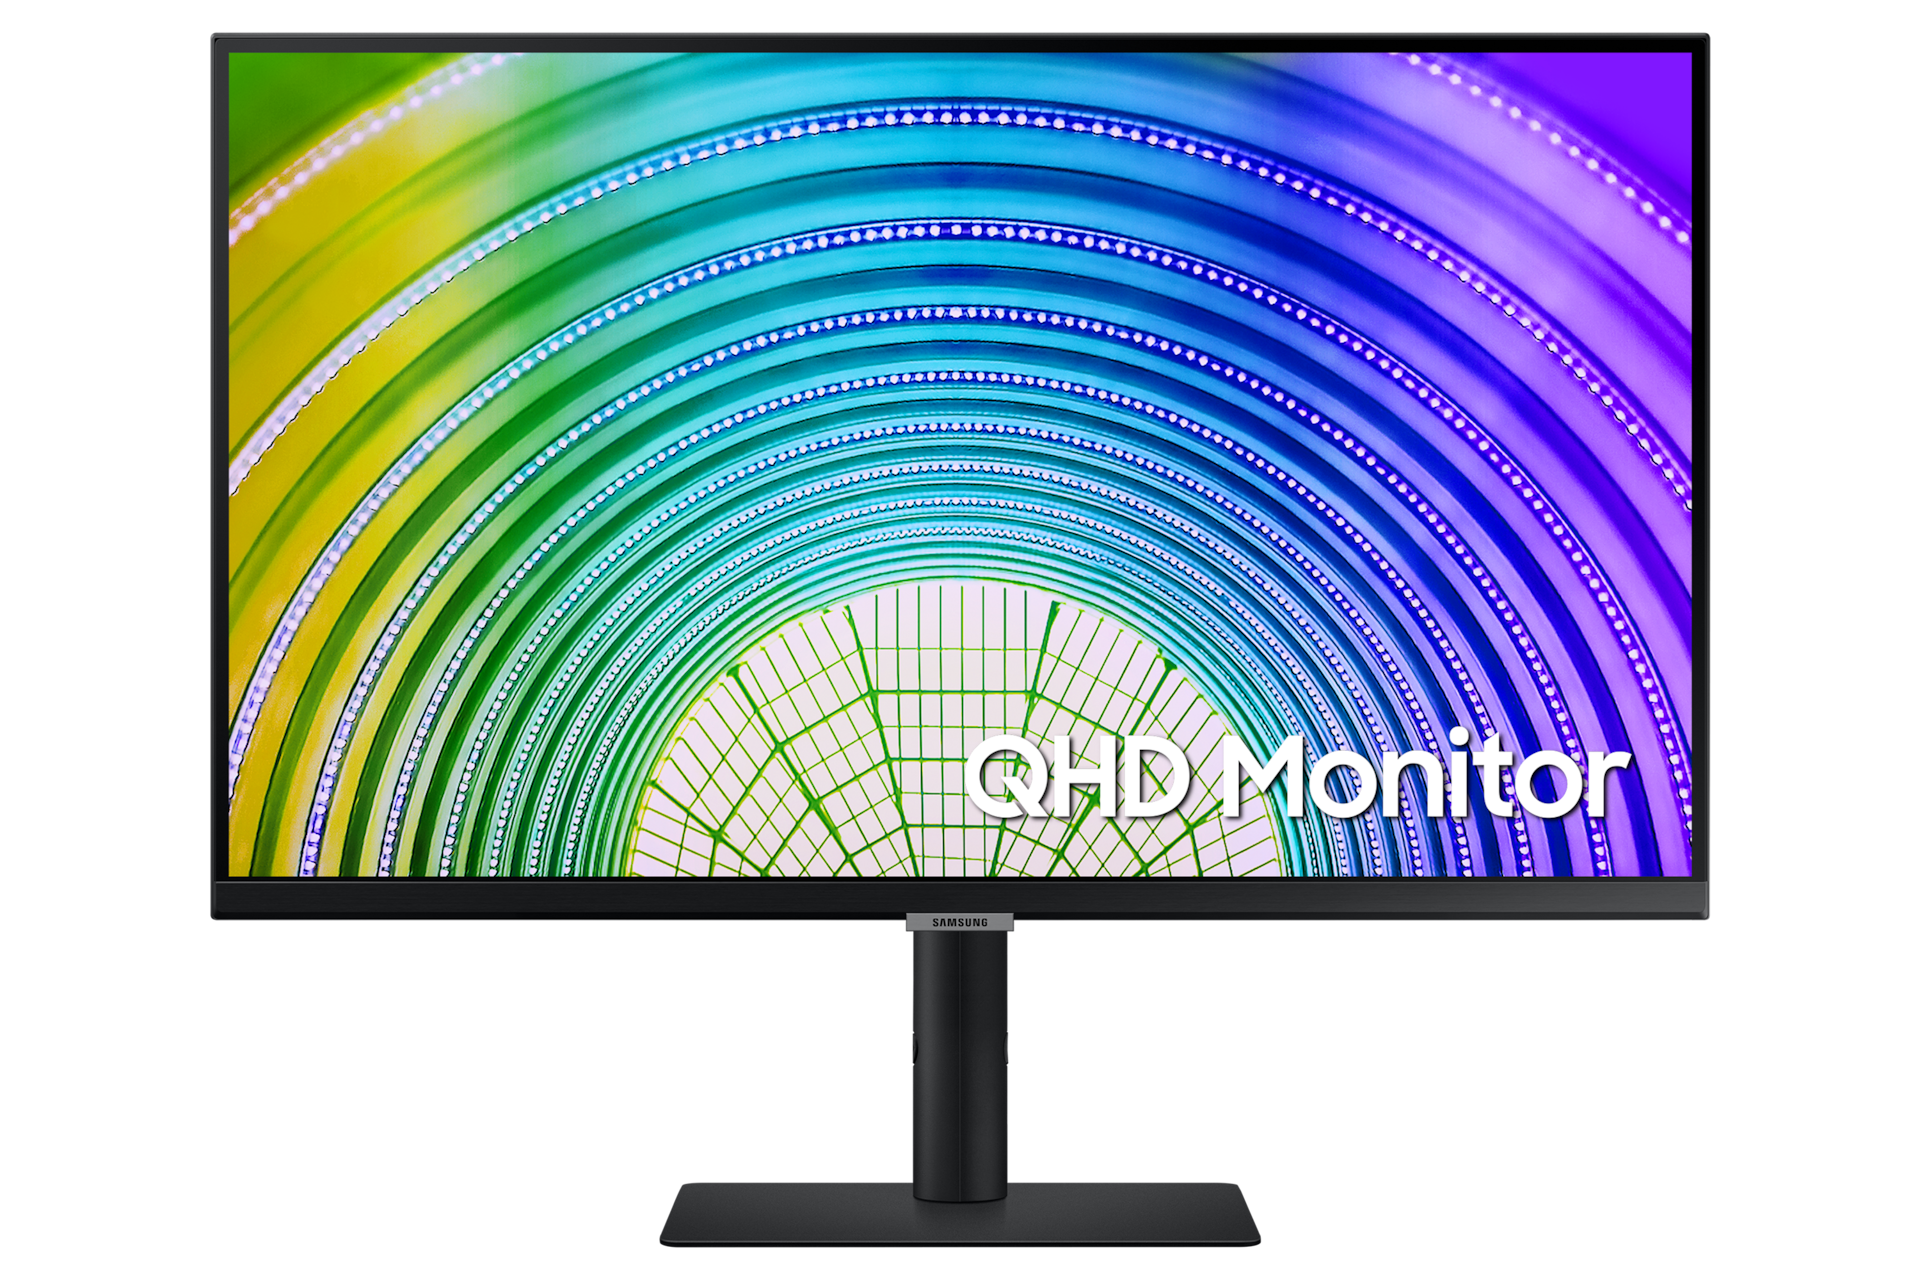 Mặt chính diện của màn hình thông minh QHD Monitor bản màu đen cho thấy thiết kế sang trọng và hiện đại